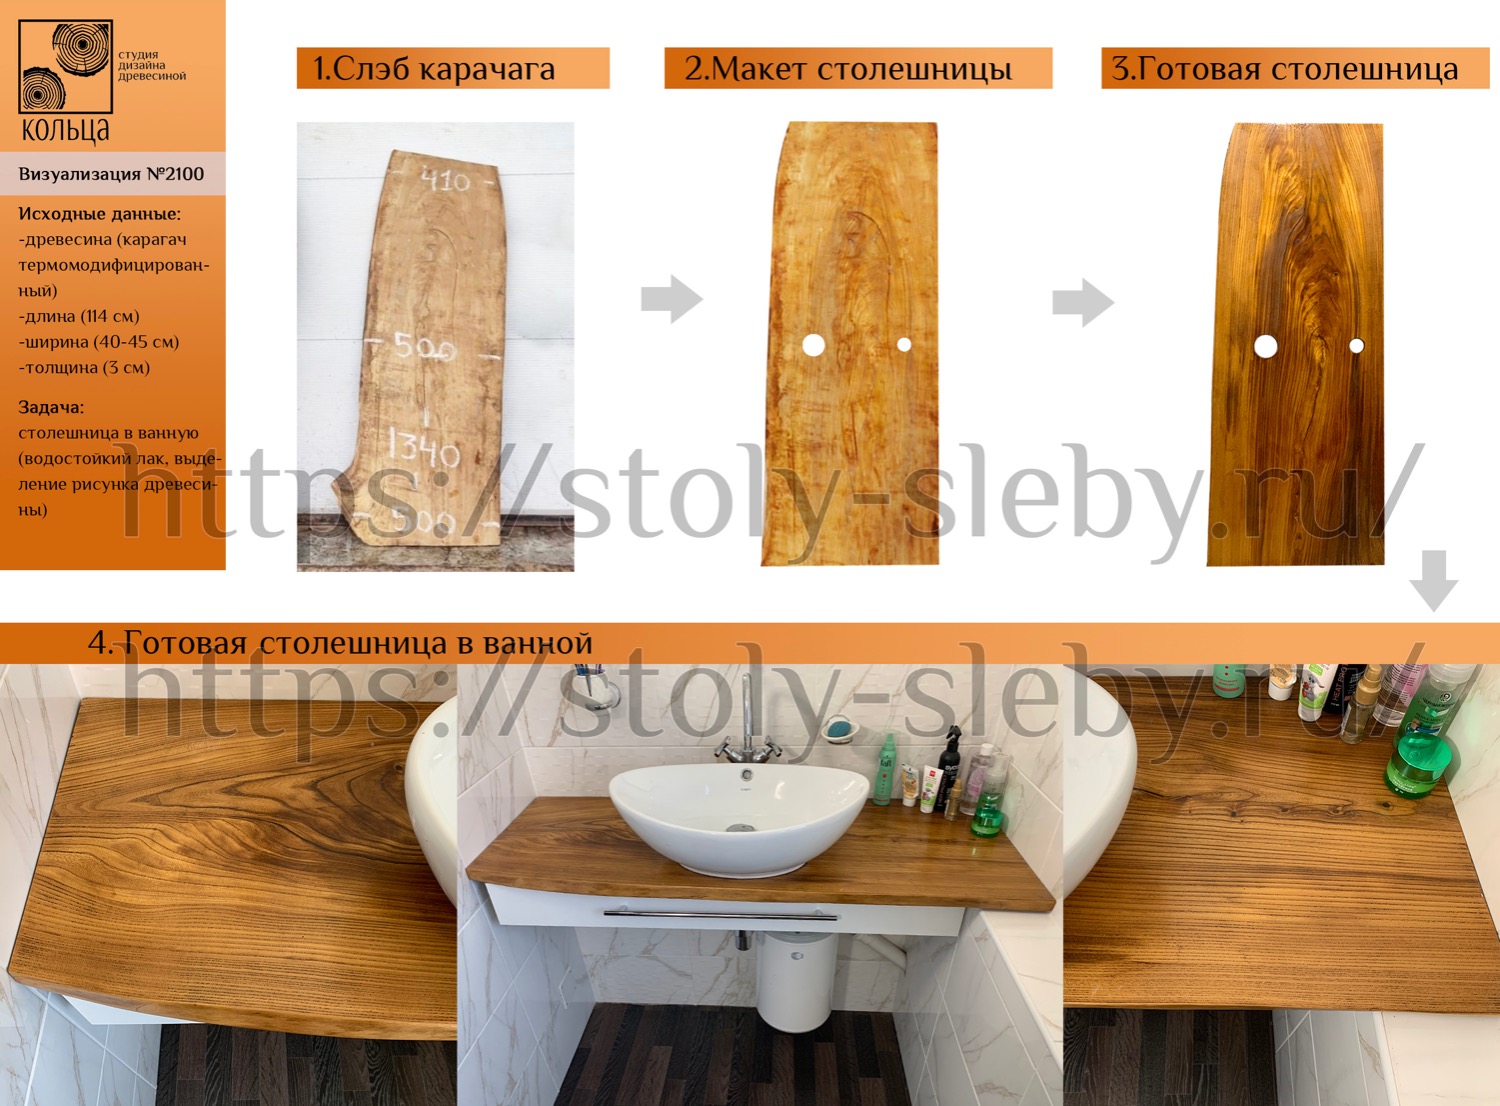 Инфографика: этапы разработки столешницы в ванную из термокарагача - от студии Кольца